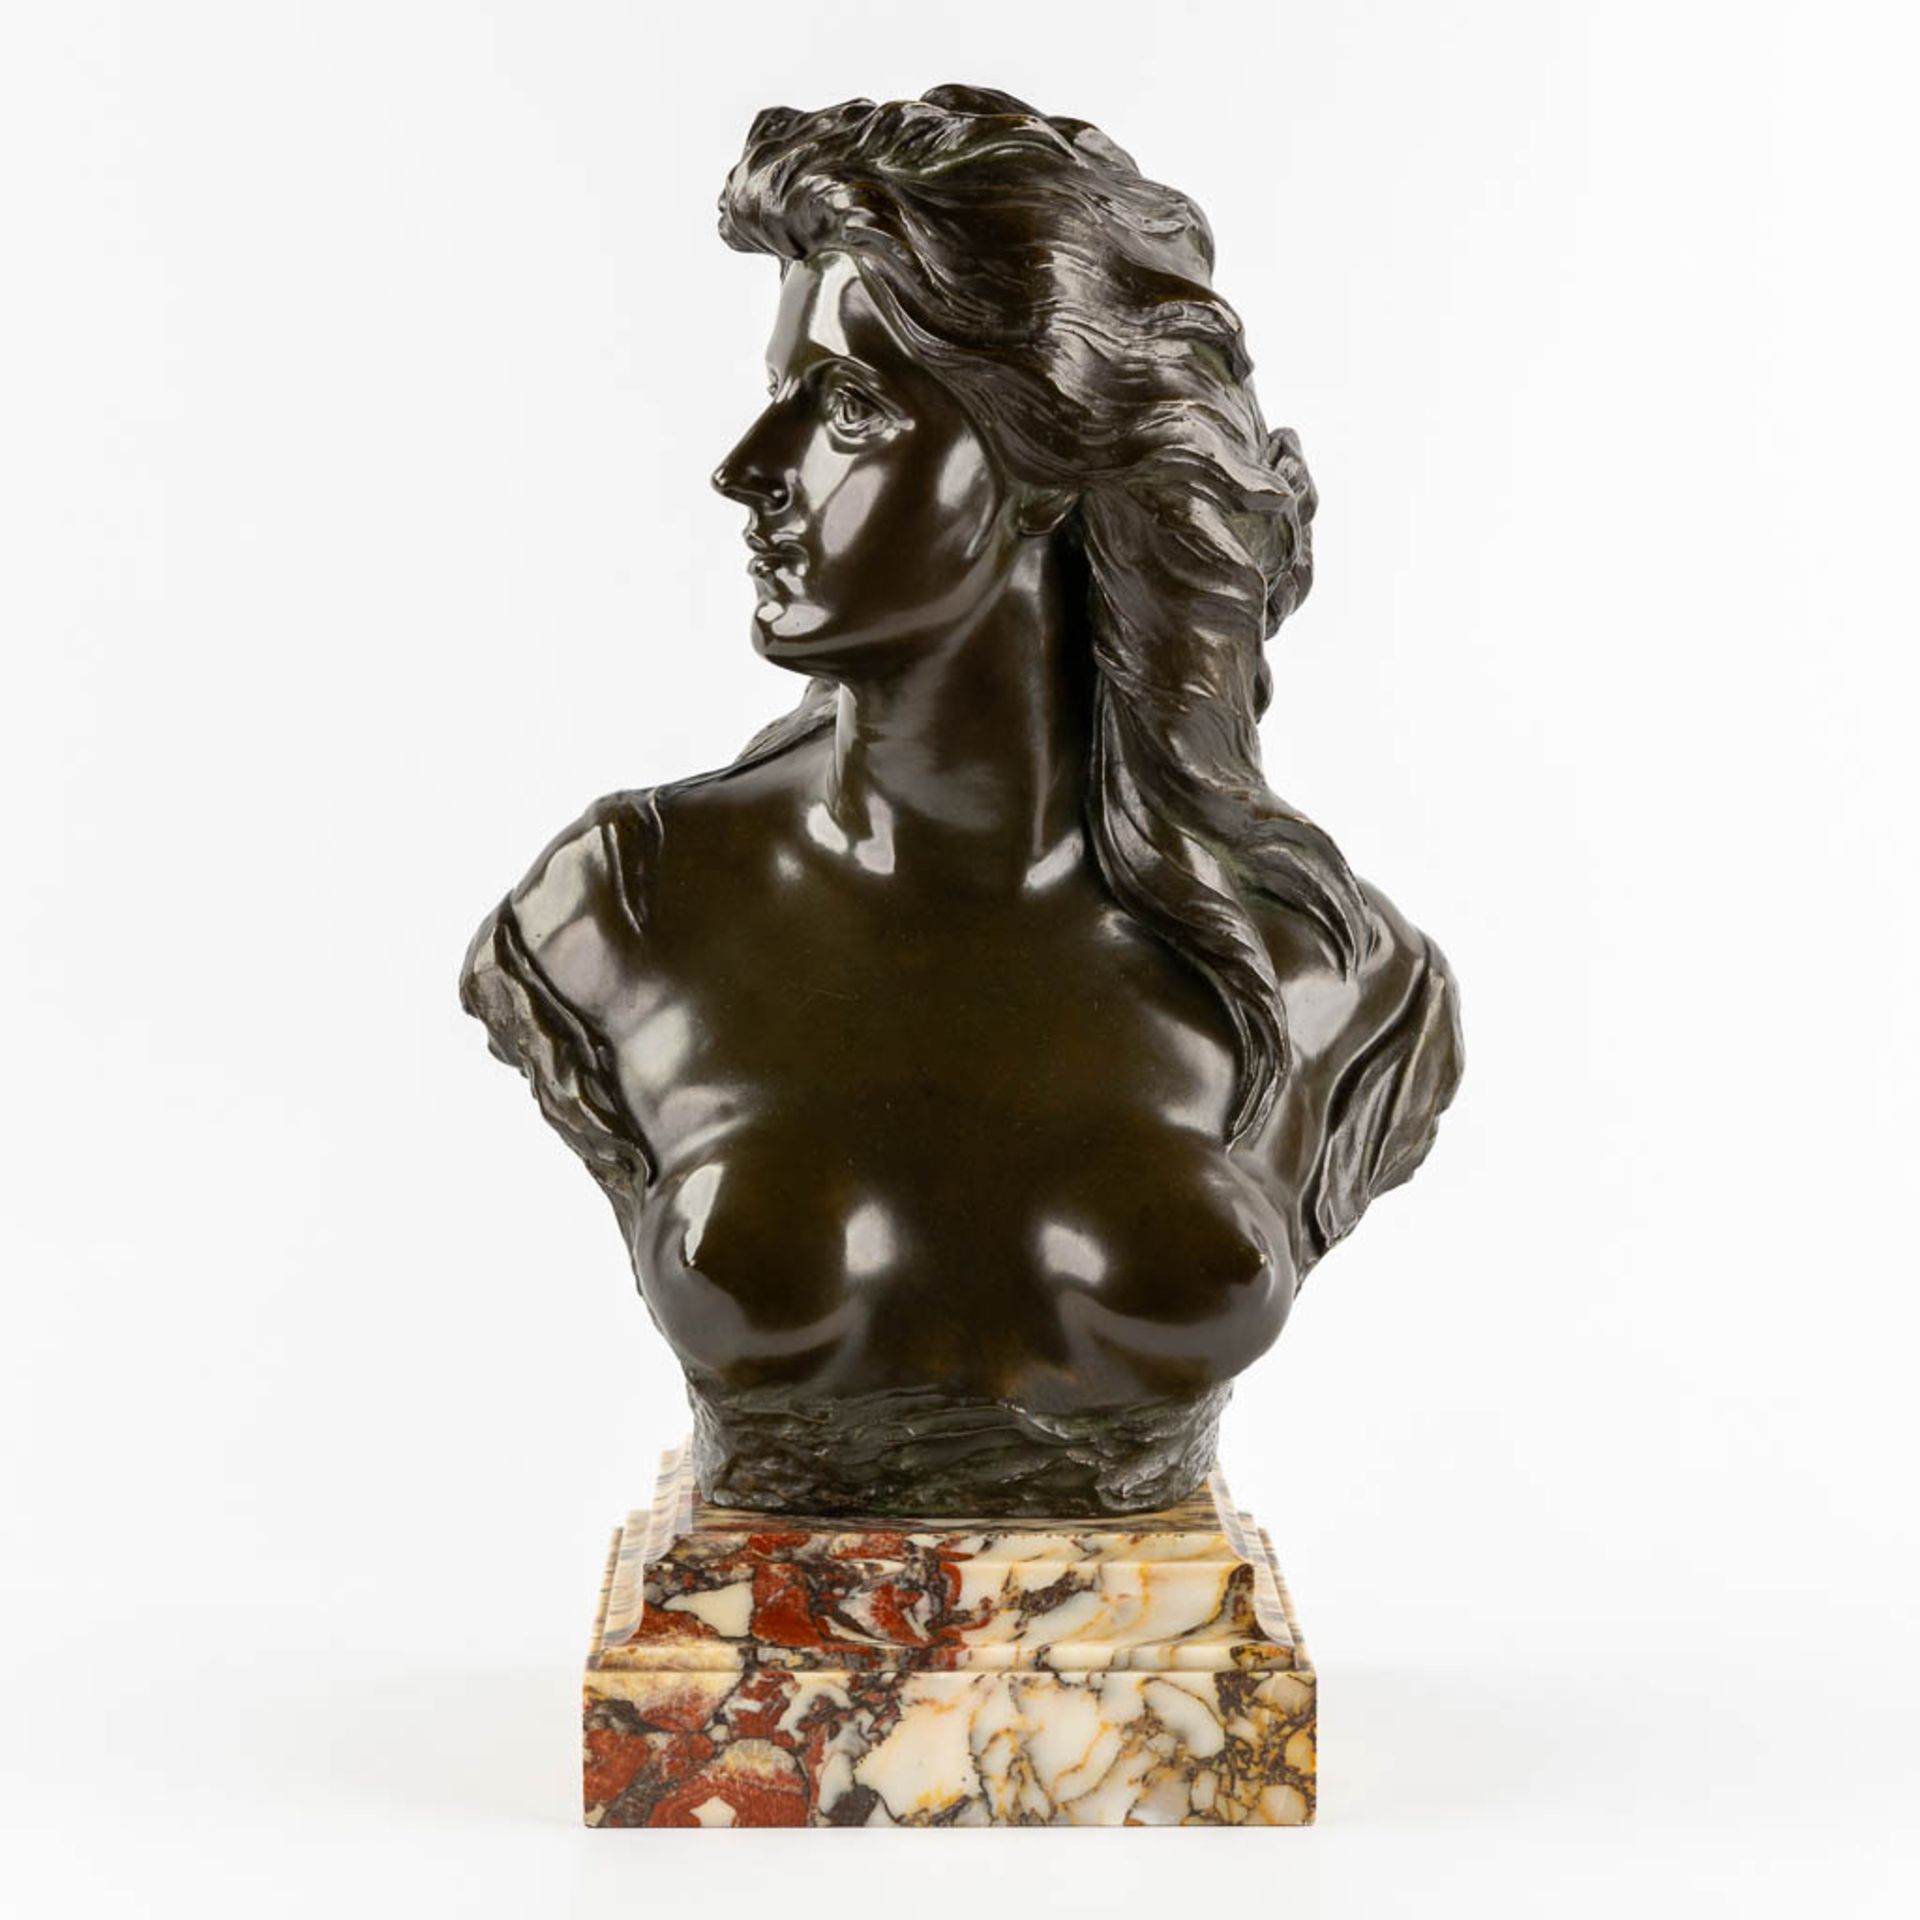 Jef LAMBEAUX (1852-1908) 'La Fierté' patinated bronze. (L:20 x W:35 x H:47 cm)